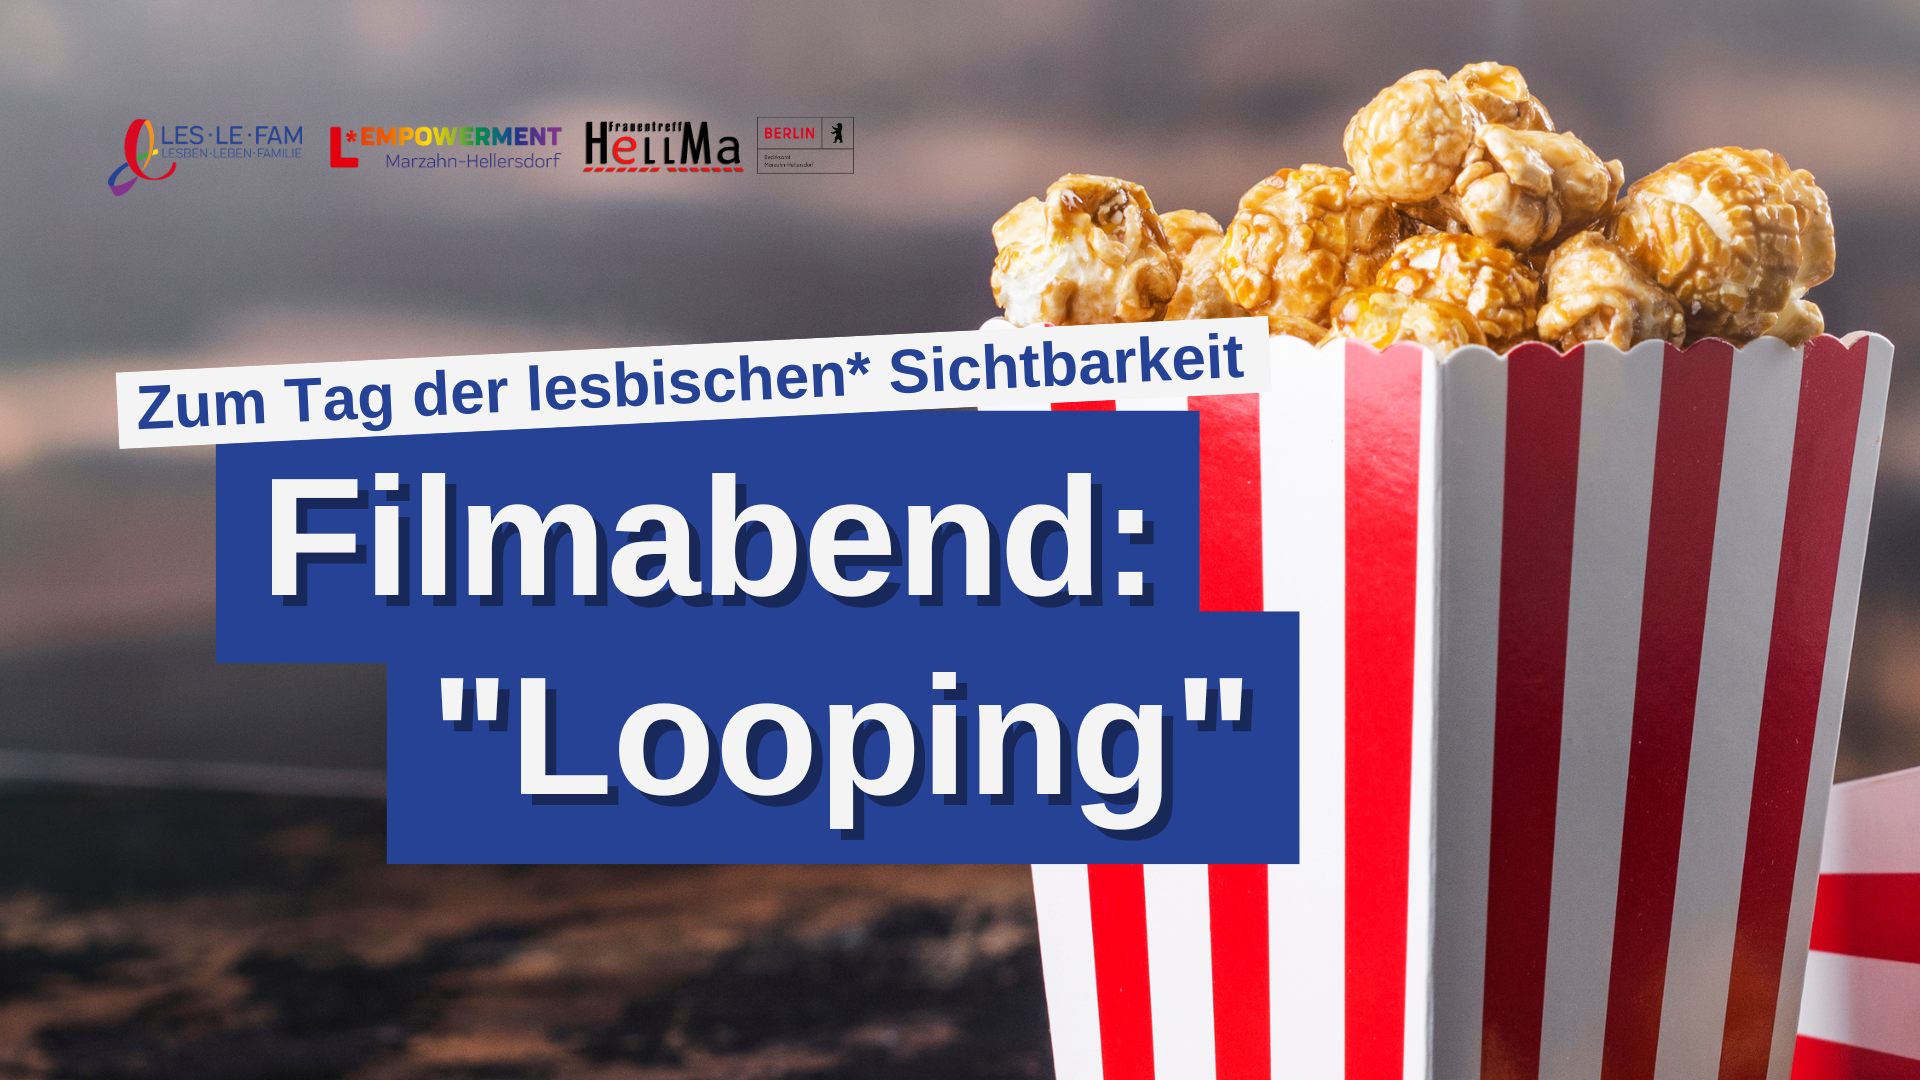 Zum Tag der lesbischen* Sichtbarkeit: Filmabend "Looping"